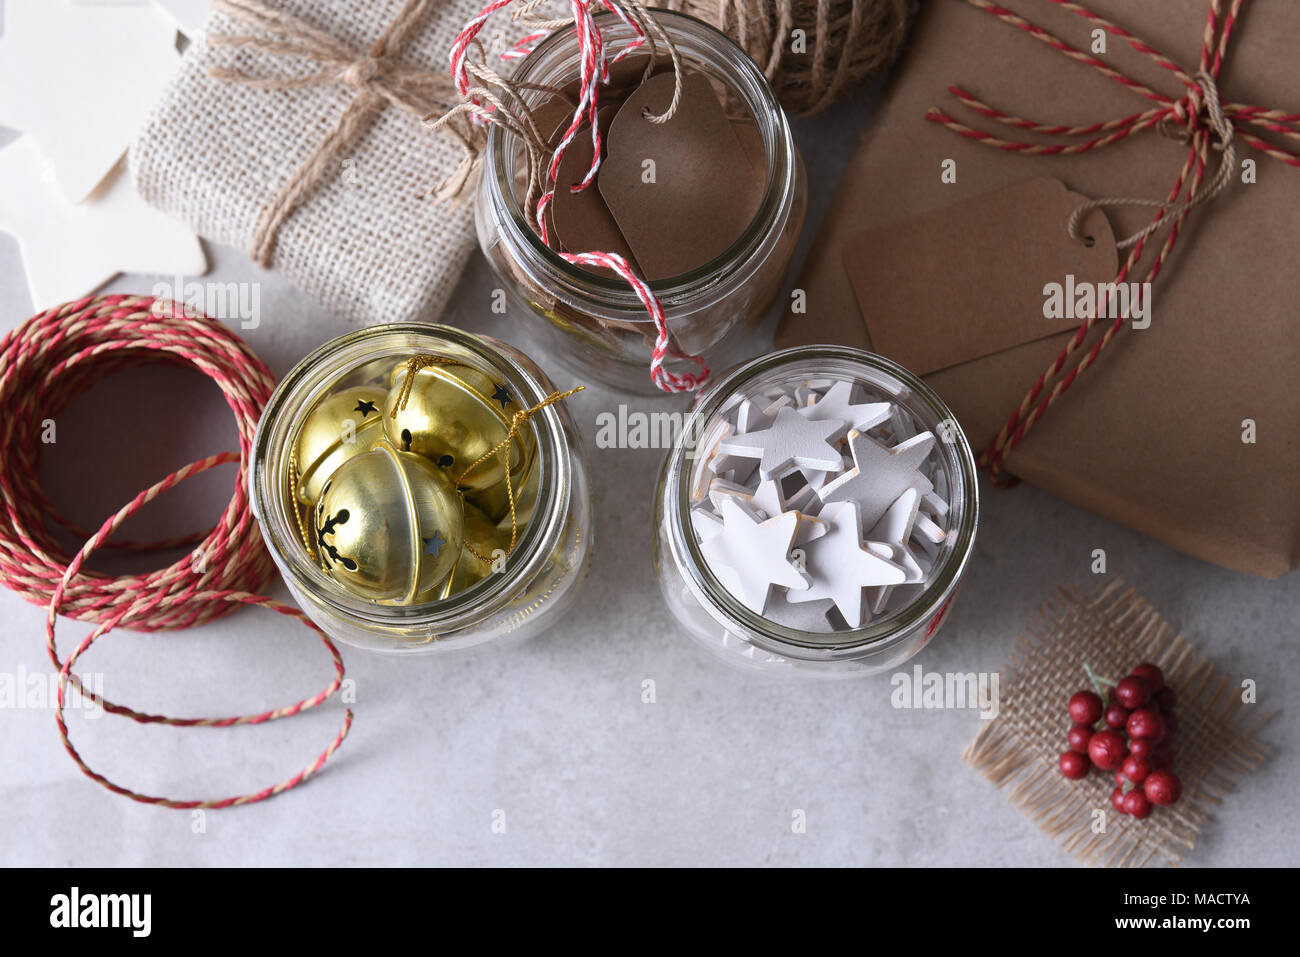 Fournitures d'emballage cadeau de Noël. High angle shot de trois bocaux Mason avec étiquettes cadeaux, bois des étoiles, et de grelots contre un mur rustique en bois blanc. Banque D'Images